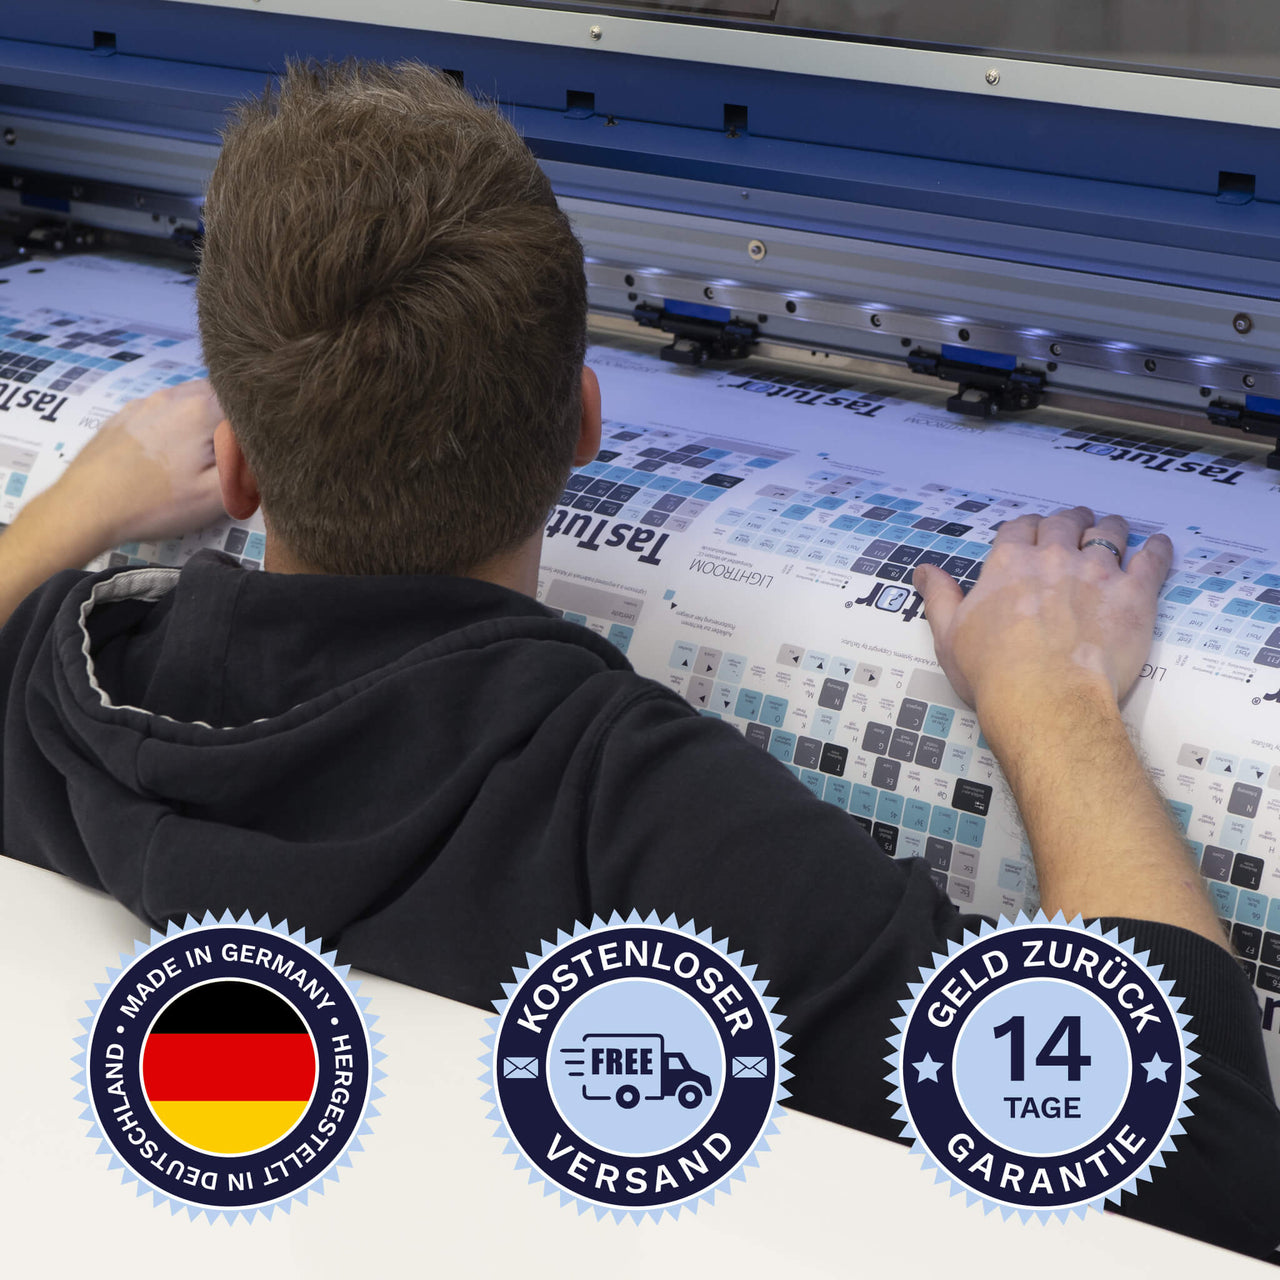 Davinci Resolve Tastaturaufkleber werden in Deutschland hergestellt. Der Versand ist kostenlos und wir gewährleisten 14 Tage Geld zurück Garantie | TasTutor